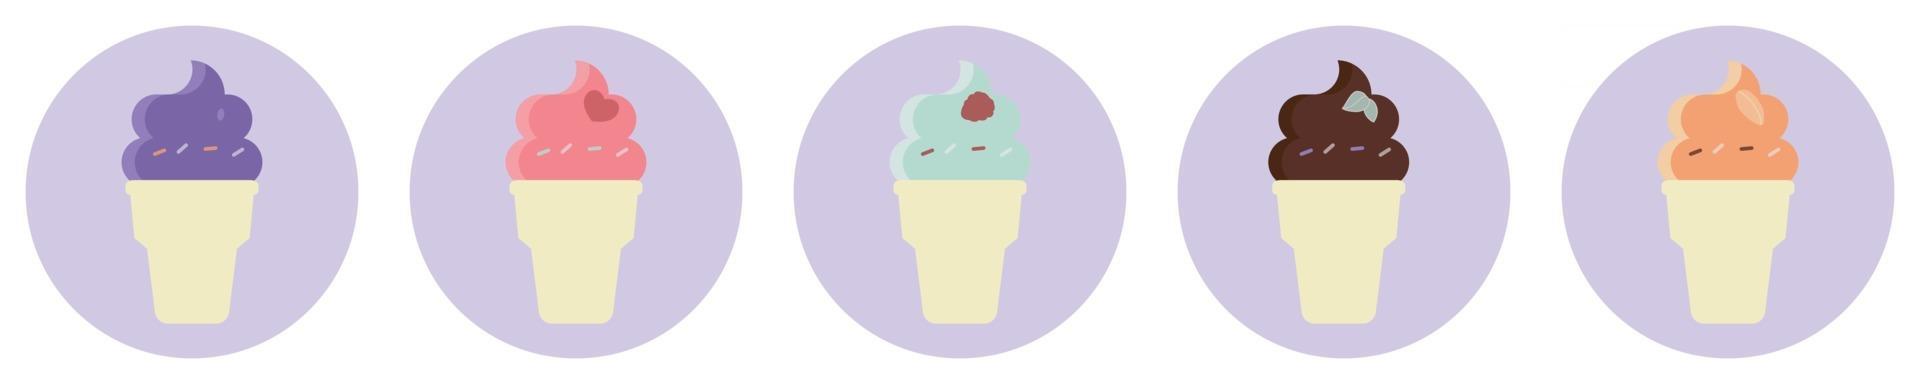 ilustração de sorvete colorido isolado em um fundo branco vetor